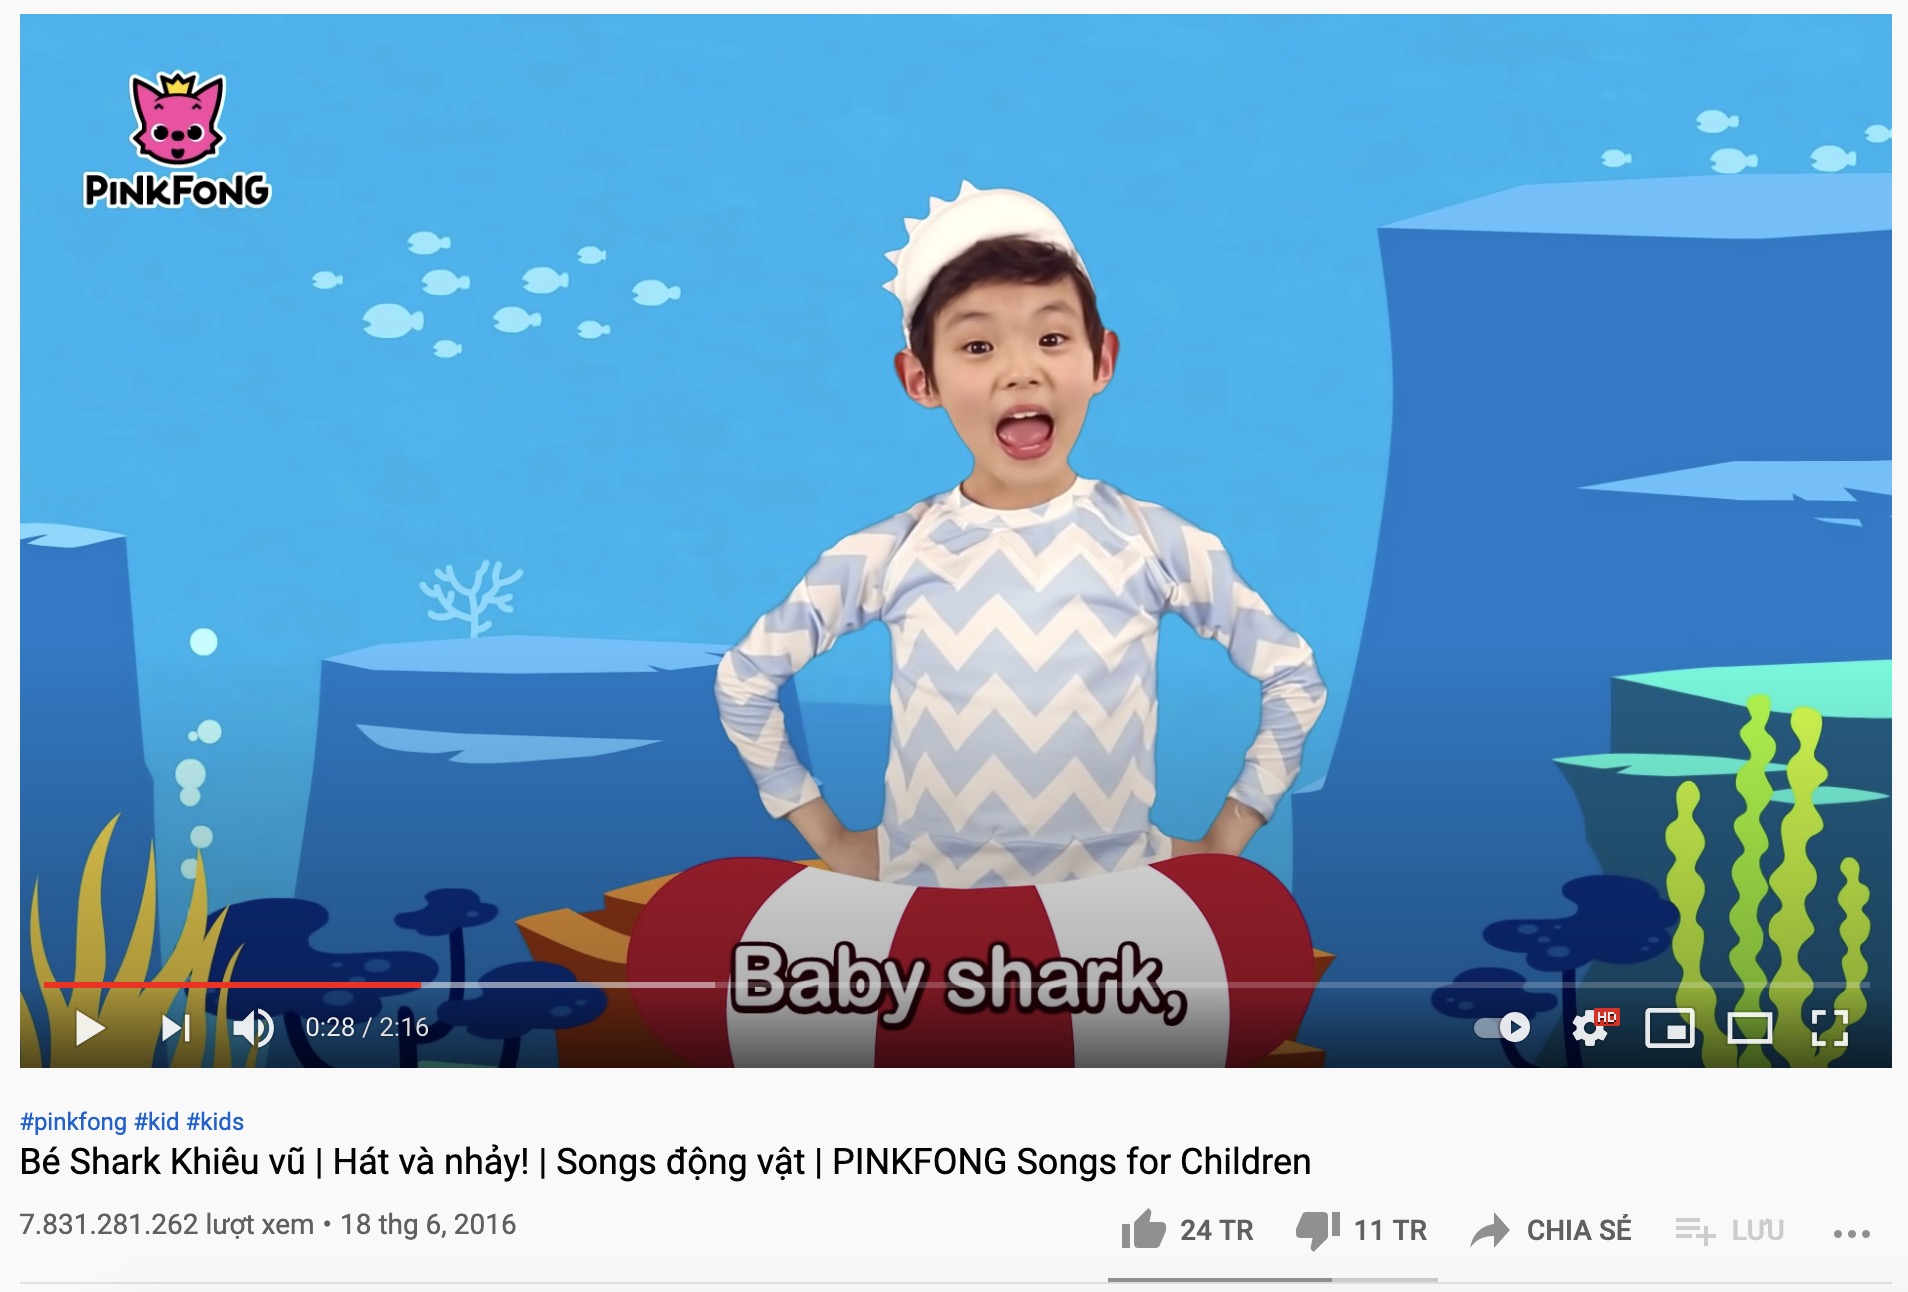 'Baby Shark' cực kỳ được các bà mẹ Việt ưa chuộng dùng để mở cho con cháu nghe để giải trí, dỗ khóc, dỗ ăn... 